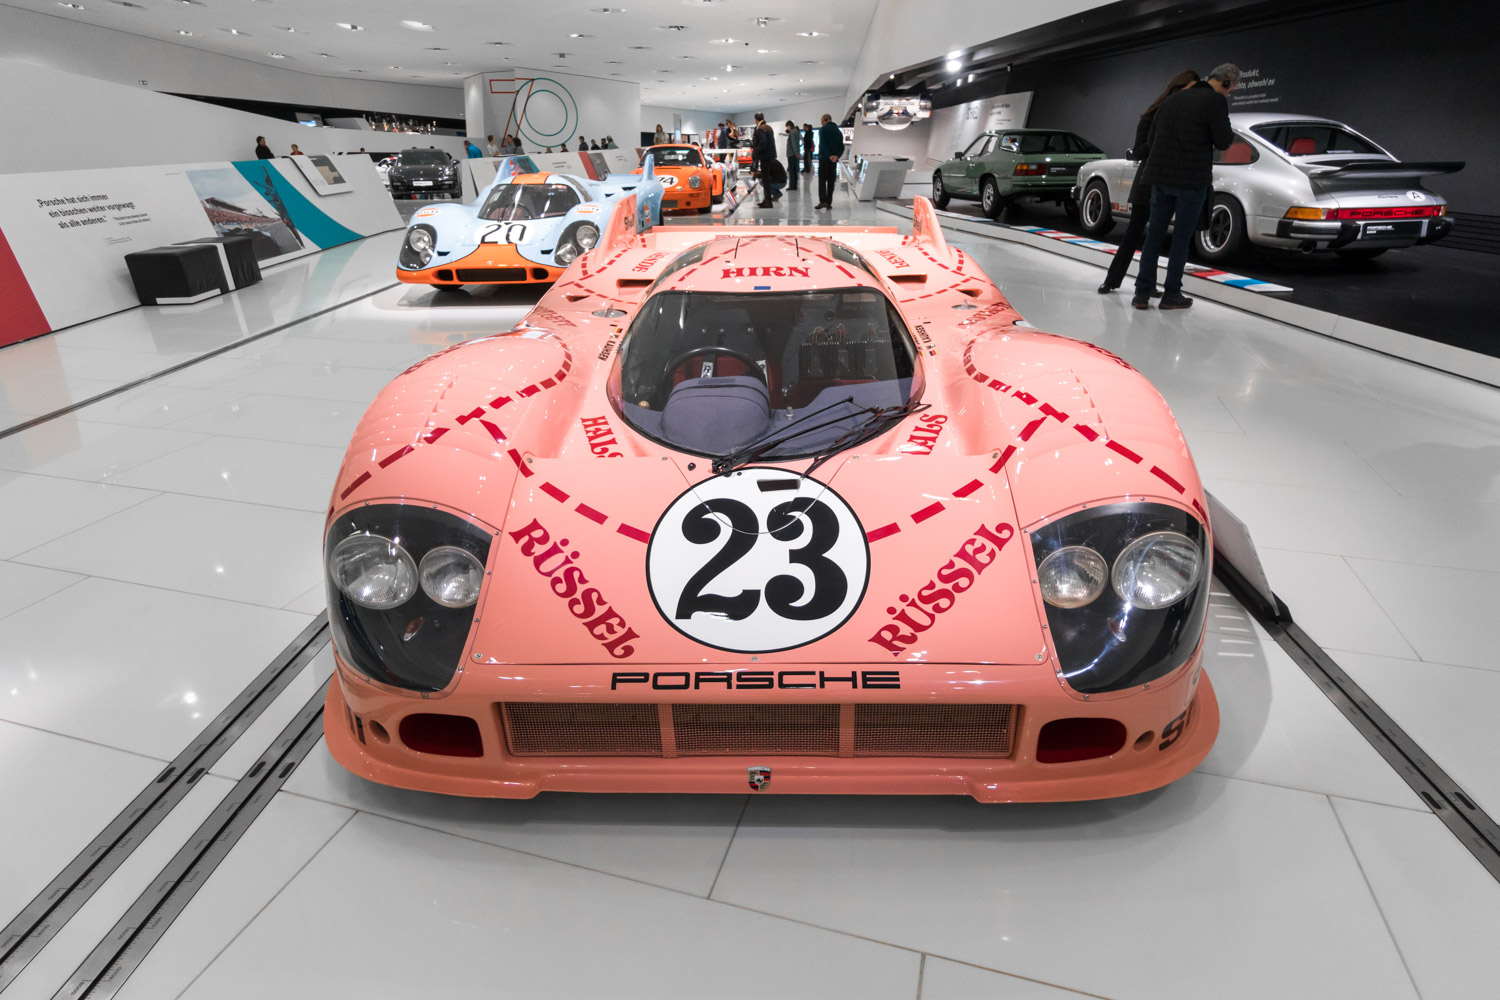 W odwiedzinach w muzeum Porsche najciekawsze auta z 70